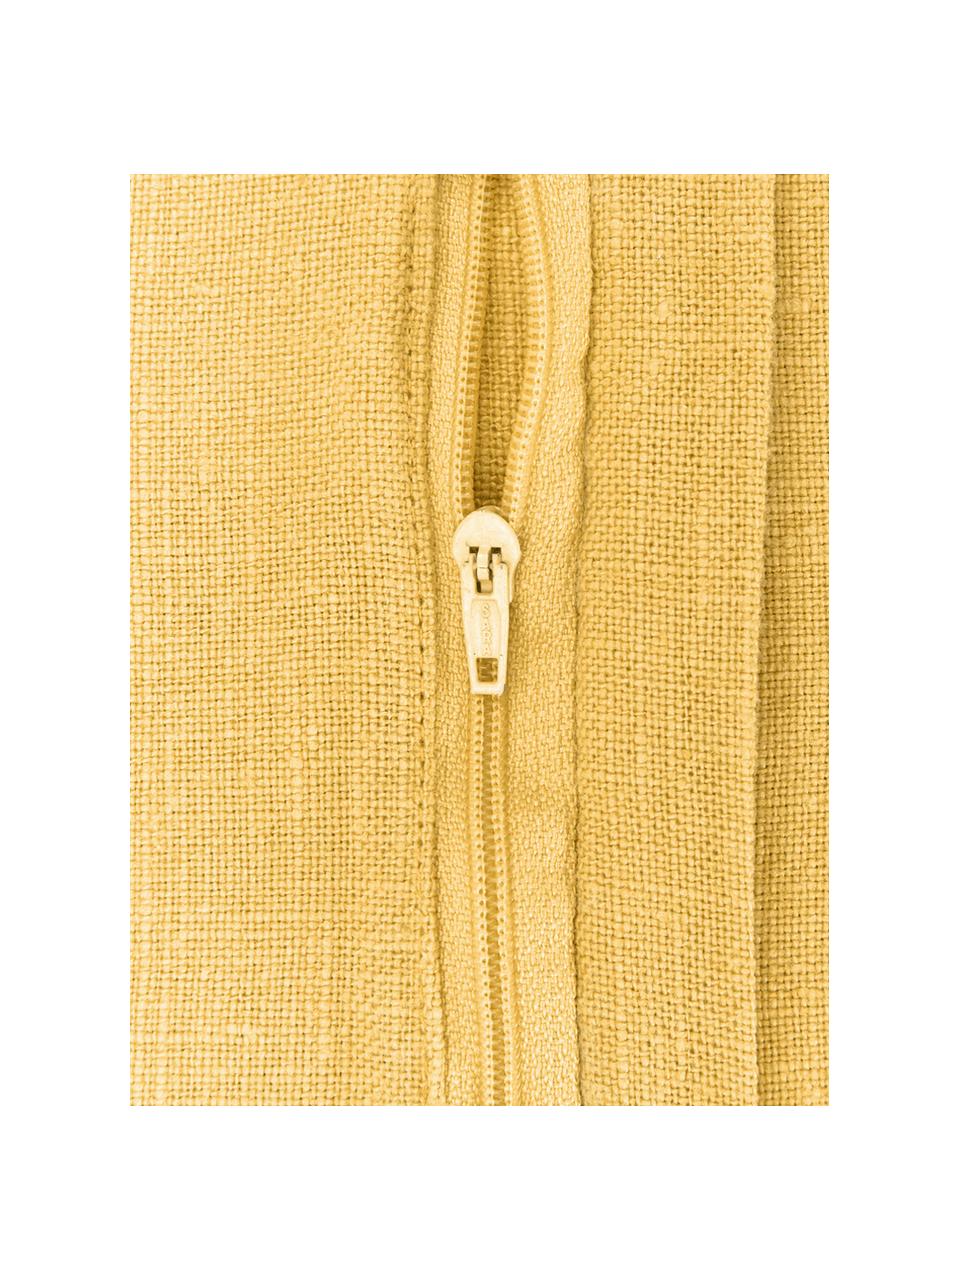 Housse de coussin pur lin jaune Lanya, 100 % lin pur

Par sa nature, le lin a un toucher plutôt rugueux et un aspect naturellement froissé. La grande résistance à la déchirure rend le lin résistant à l'abrasion et à l'usure, Jaune, larg. 30 x long. 50 cm